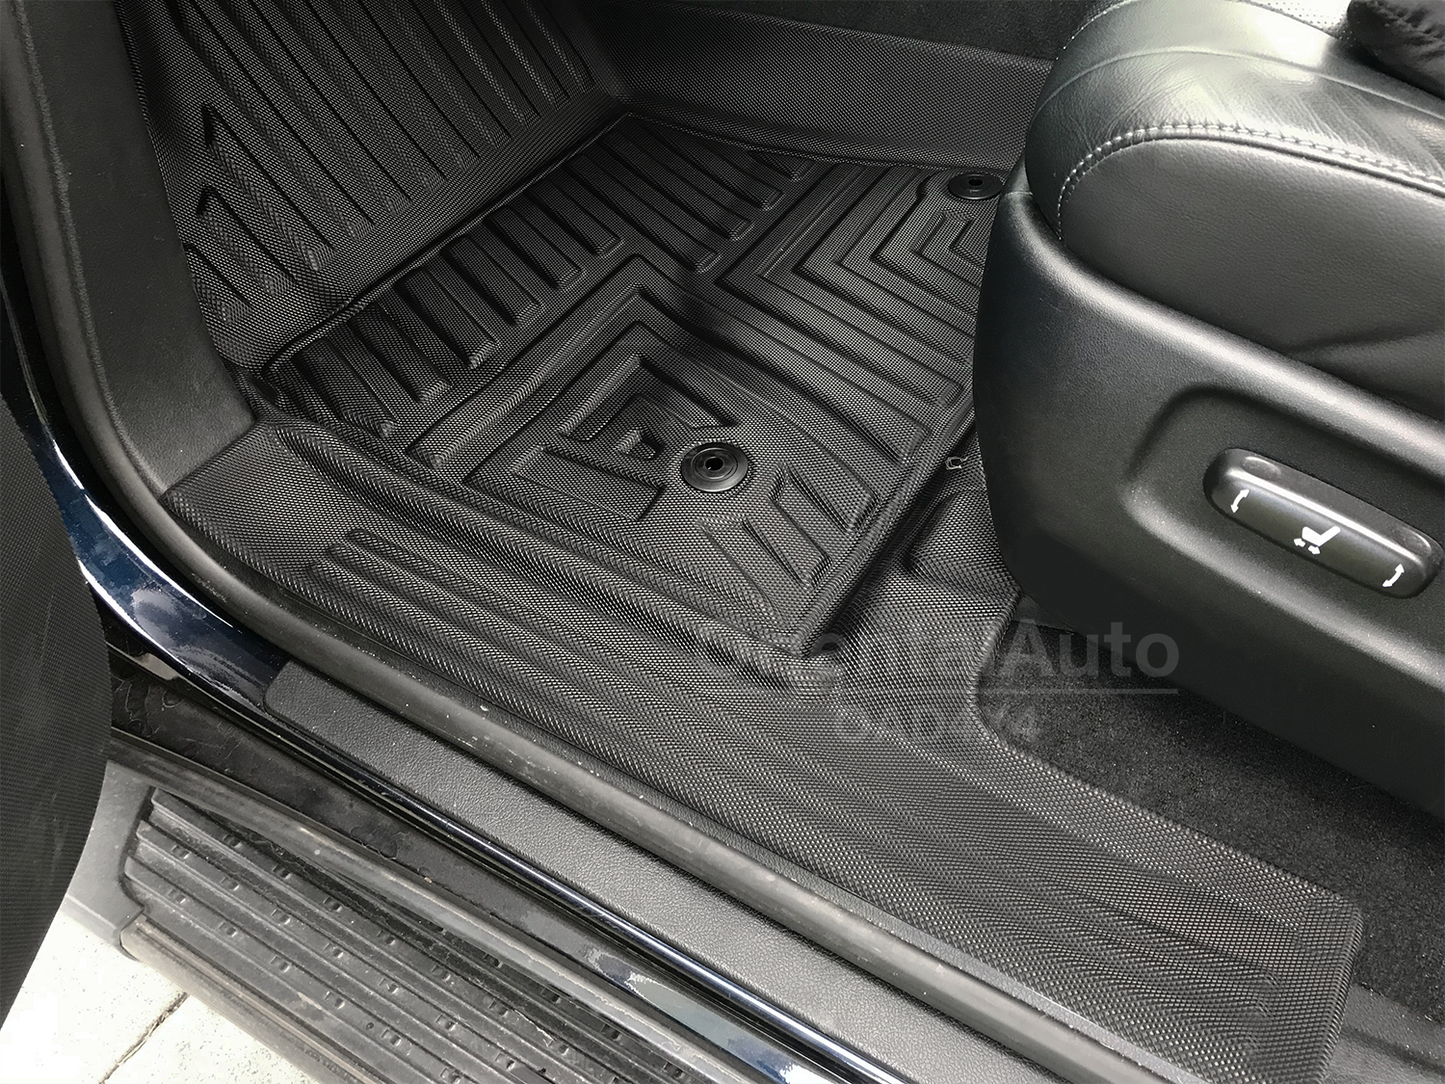 OAD 2 Rows Floor Mats & 3D Cargo Mat Boot Mat for Lexus LX570 2008-2012 5D TPE Door Sill Covered